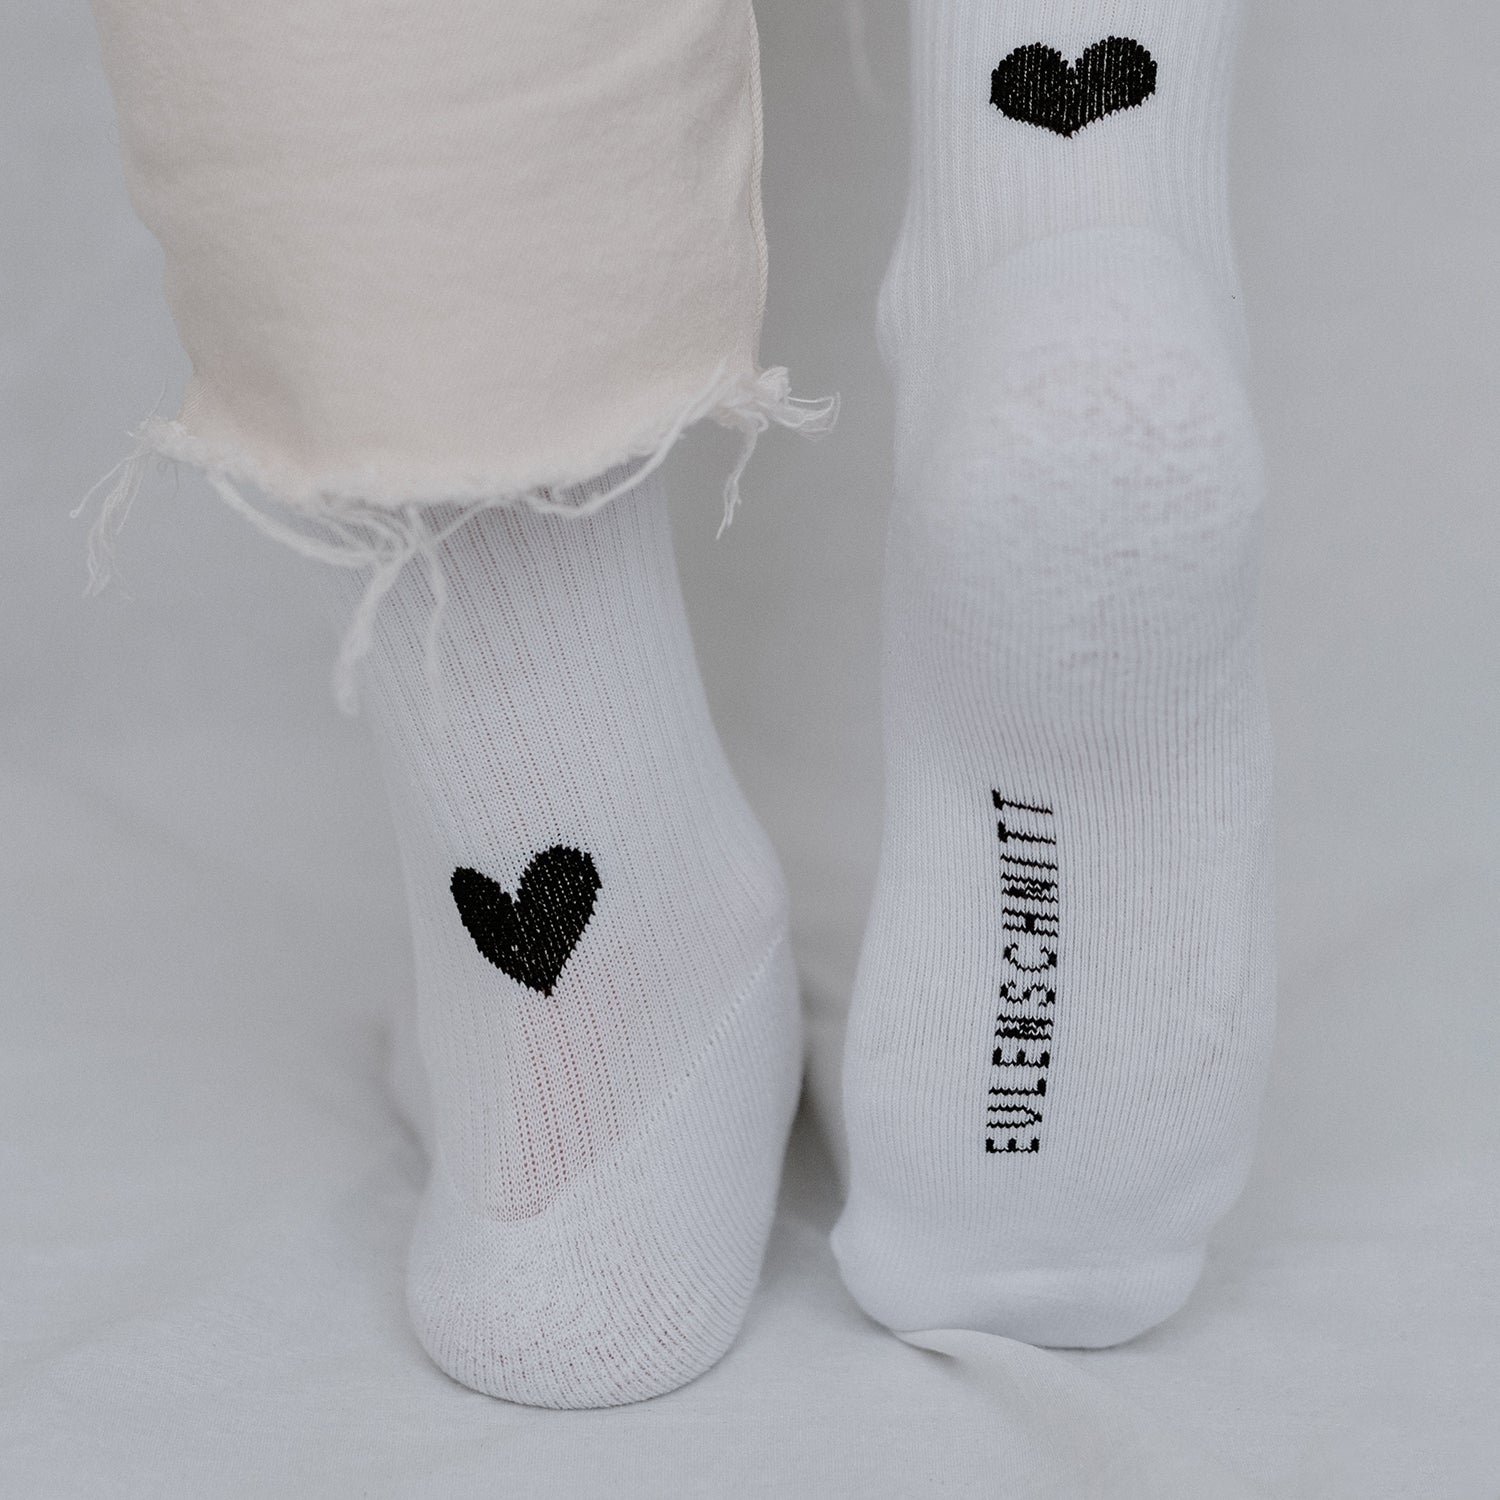 Socken - Herz - Socken - Eulenschnitt